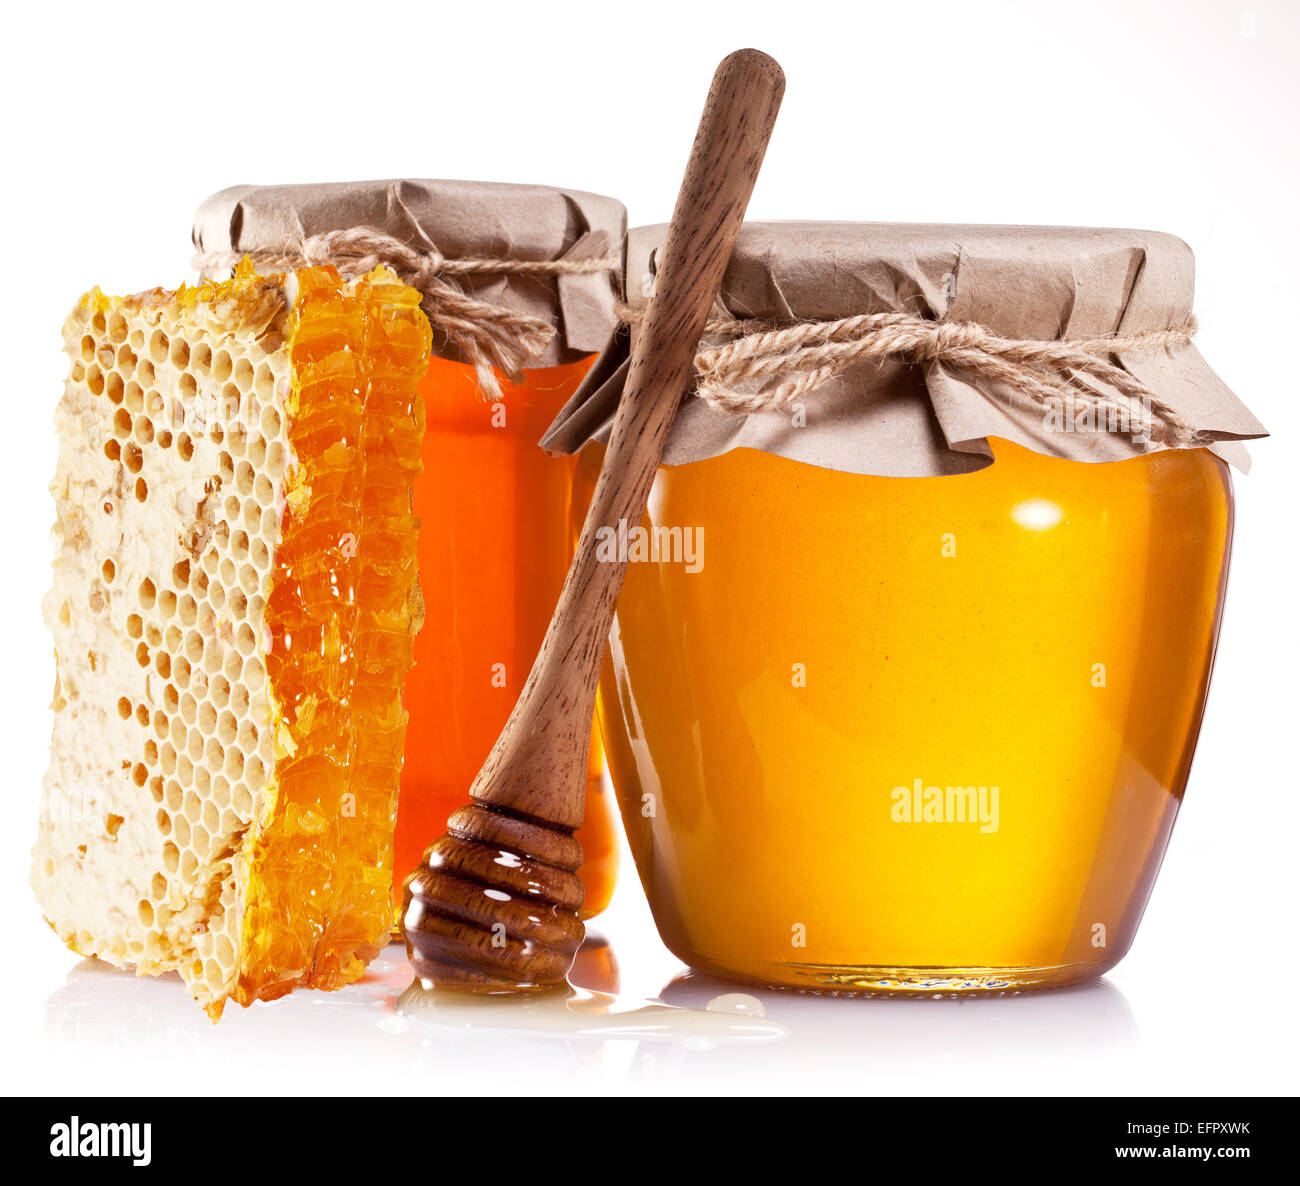 Les canettes en verre pleine de miel, miel et bâton en bois sur fond blanc. Banque D'Images